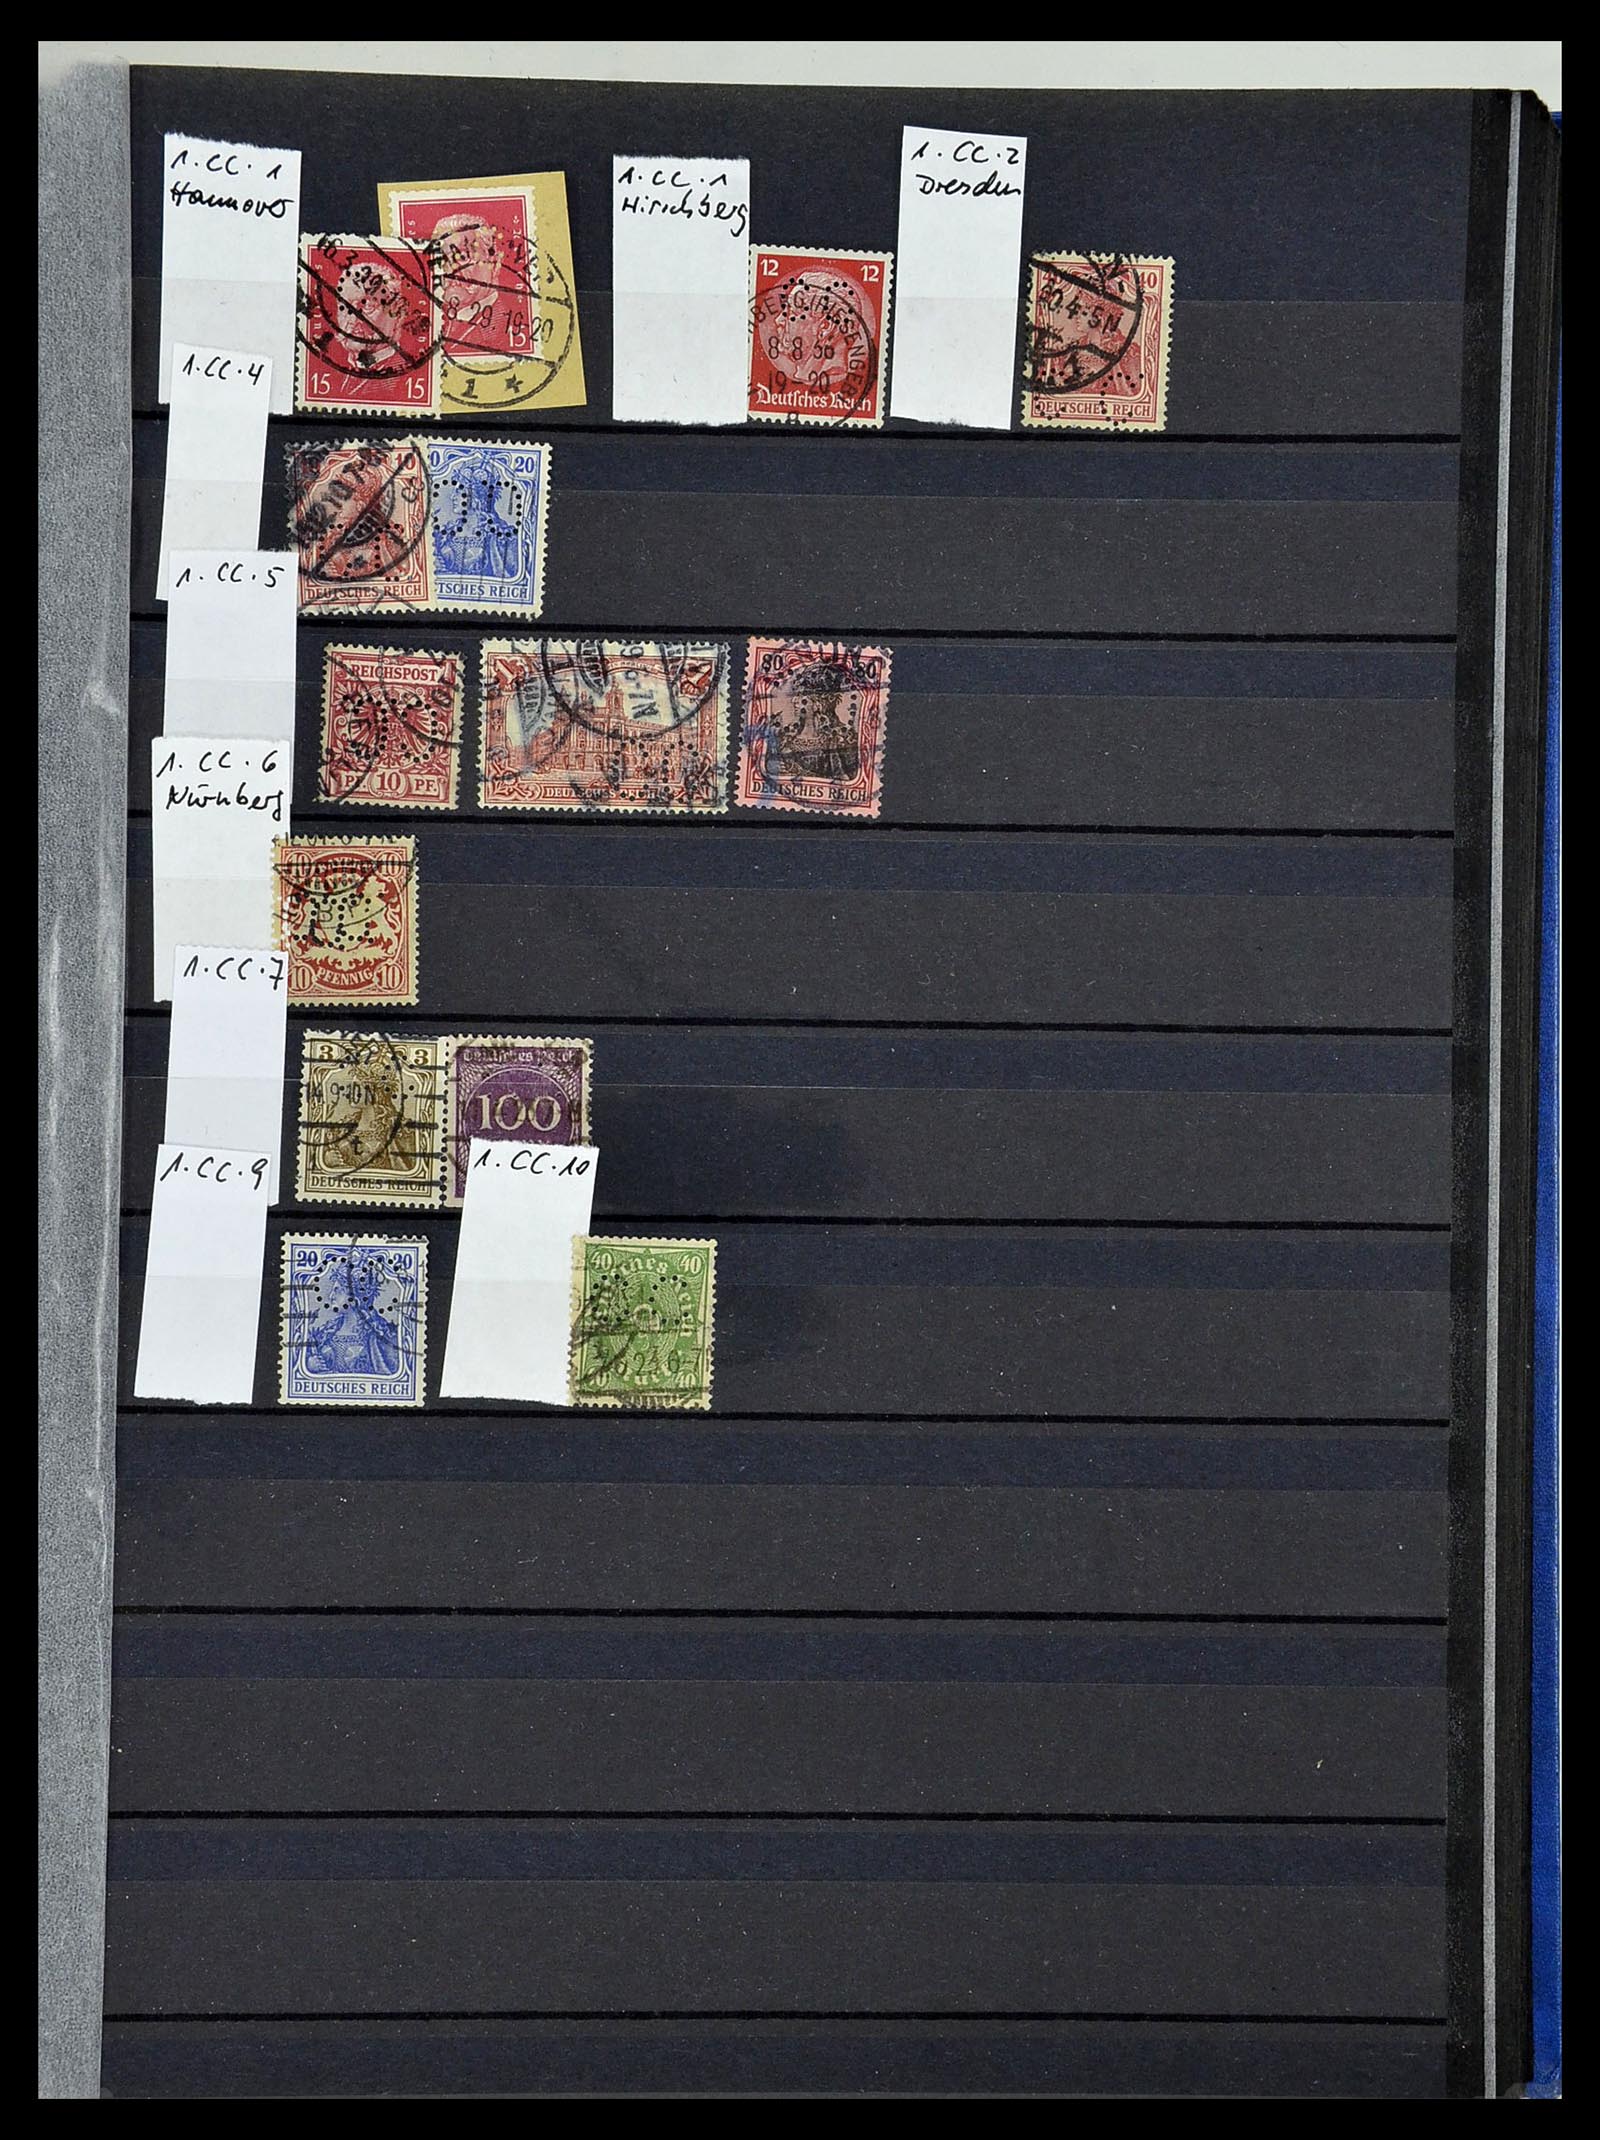 34432 078 - Stamp Collection 34432 German Reich perfins 1900-1933.